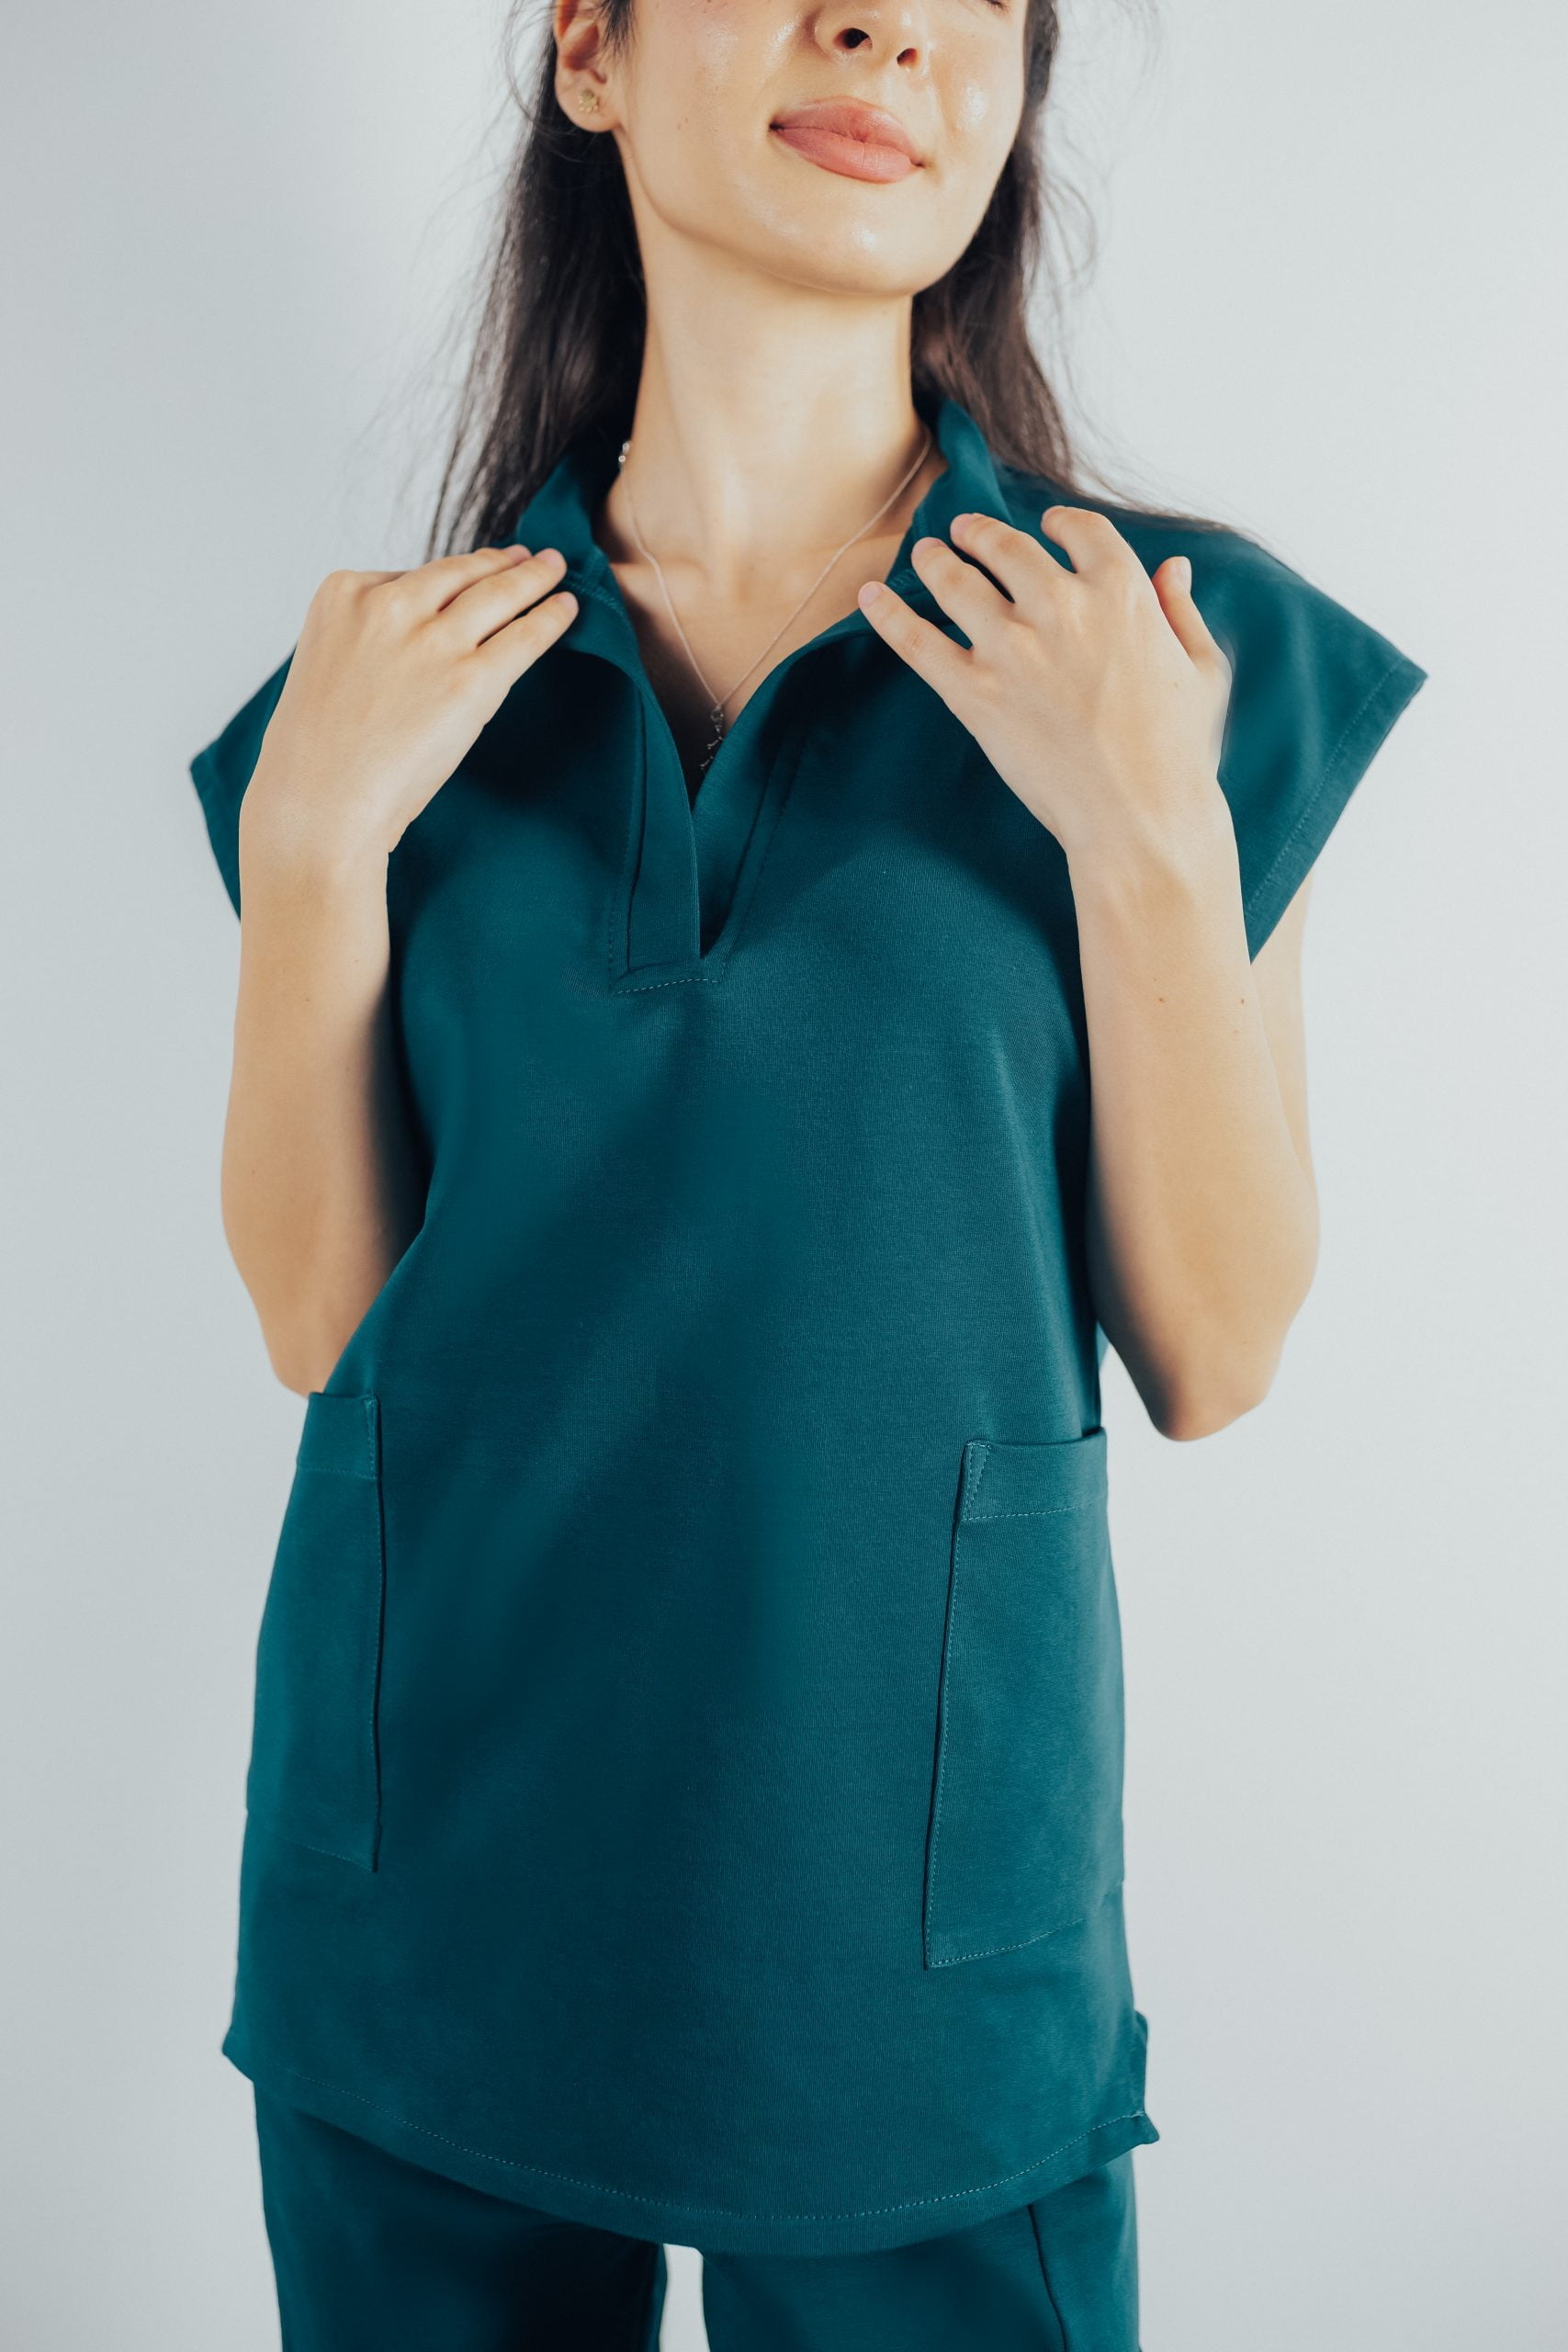 Fotografie cu vedere din fata a unei studente la medicina in timp ce poarta o bluza tunica de scrub medical turcoaz inchis ce reprezinta uniforma medicala reprezentativa a unui doctor